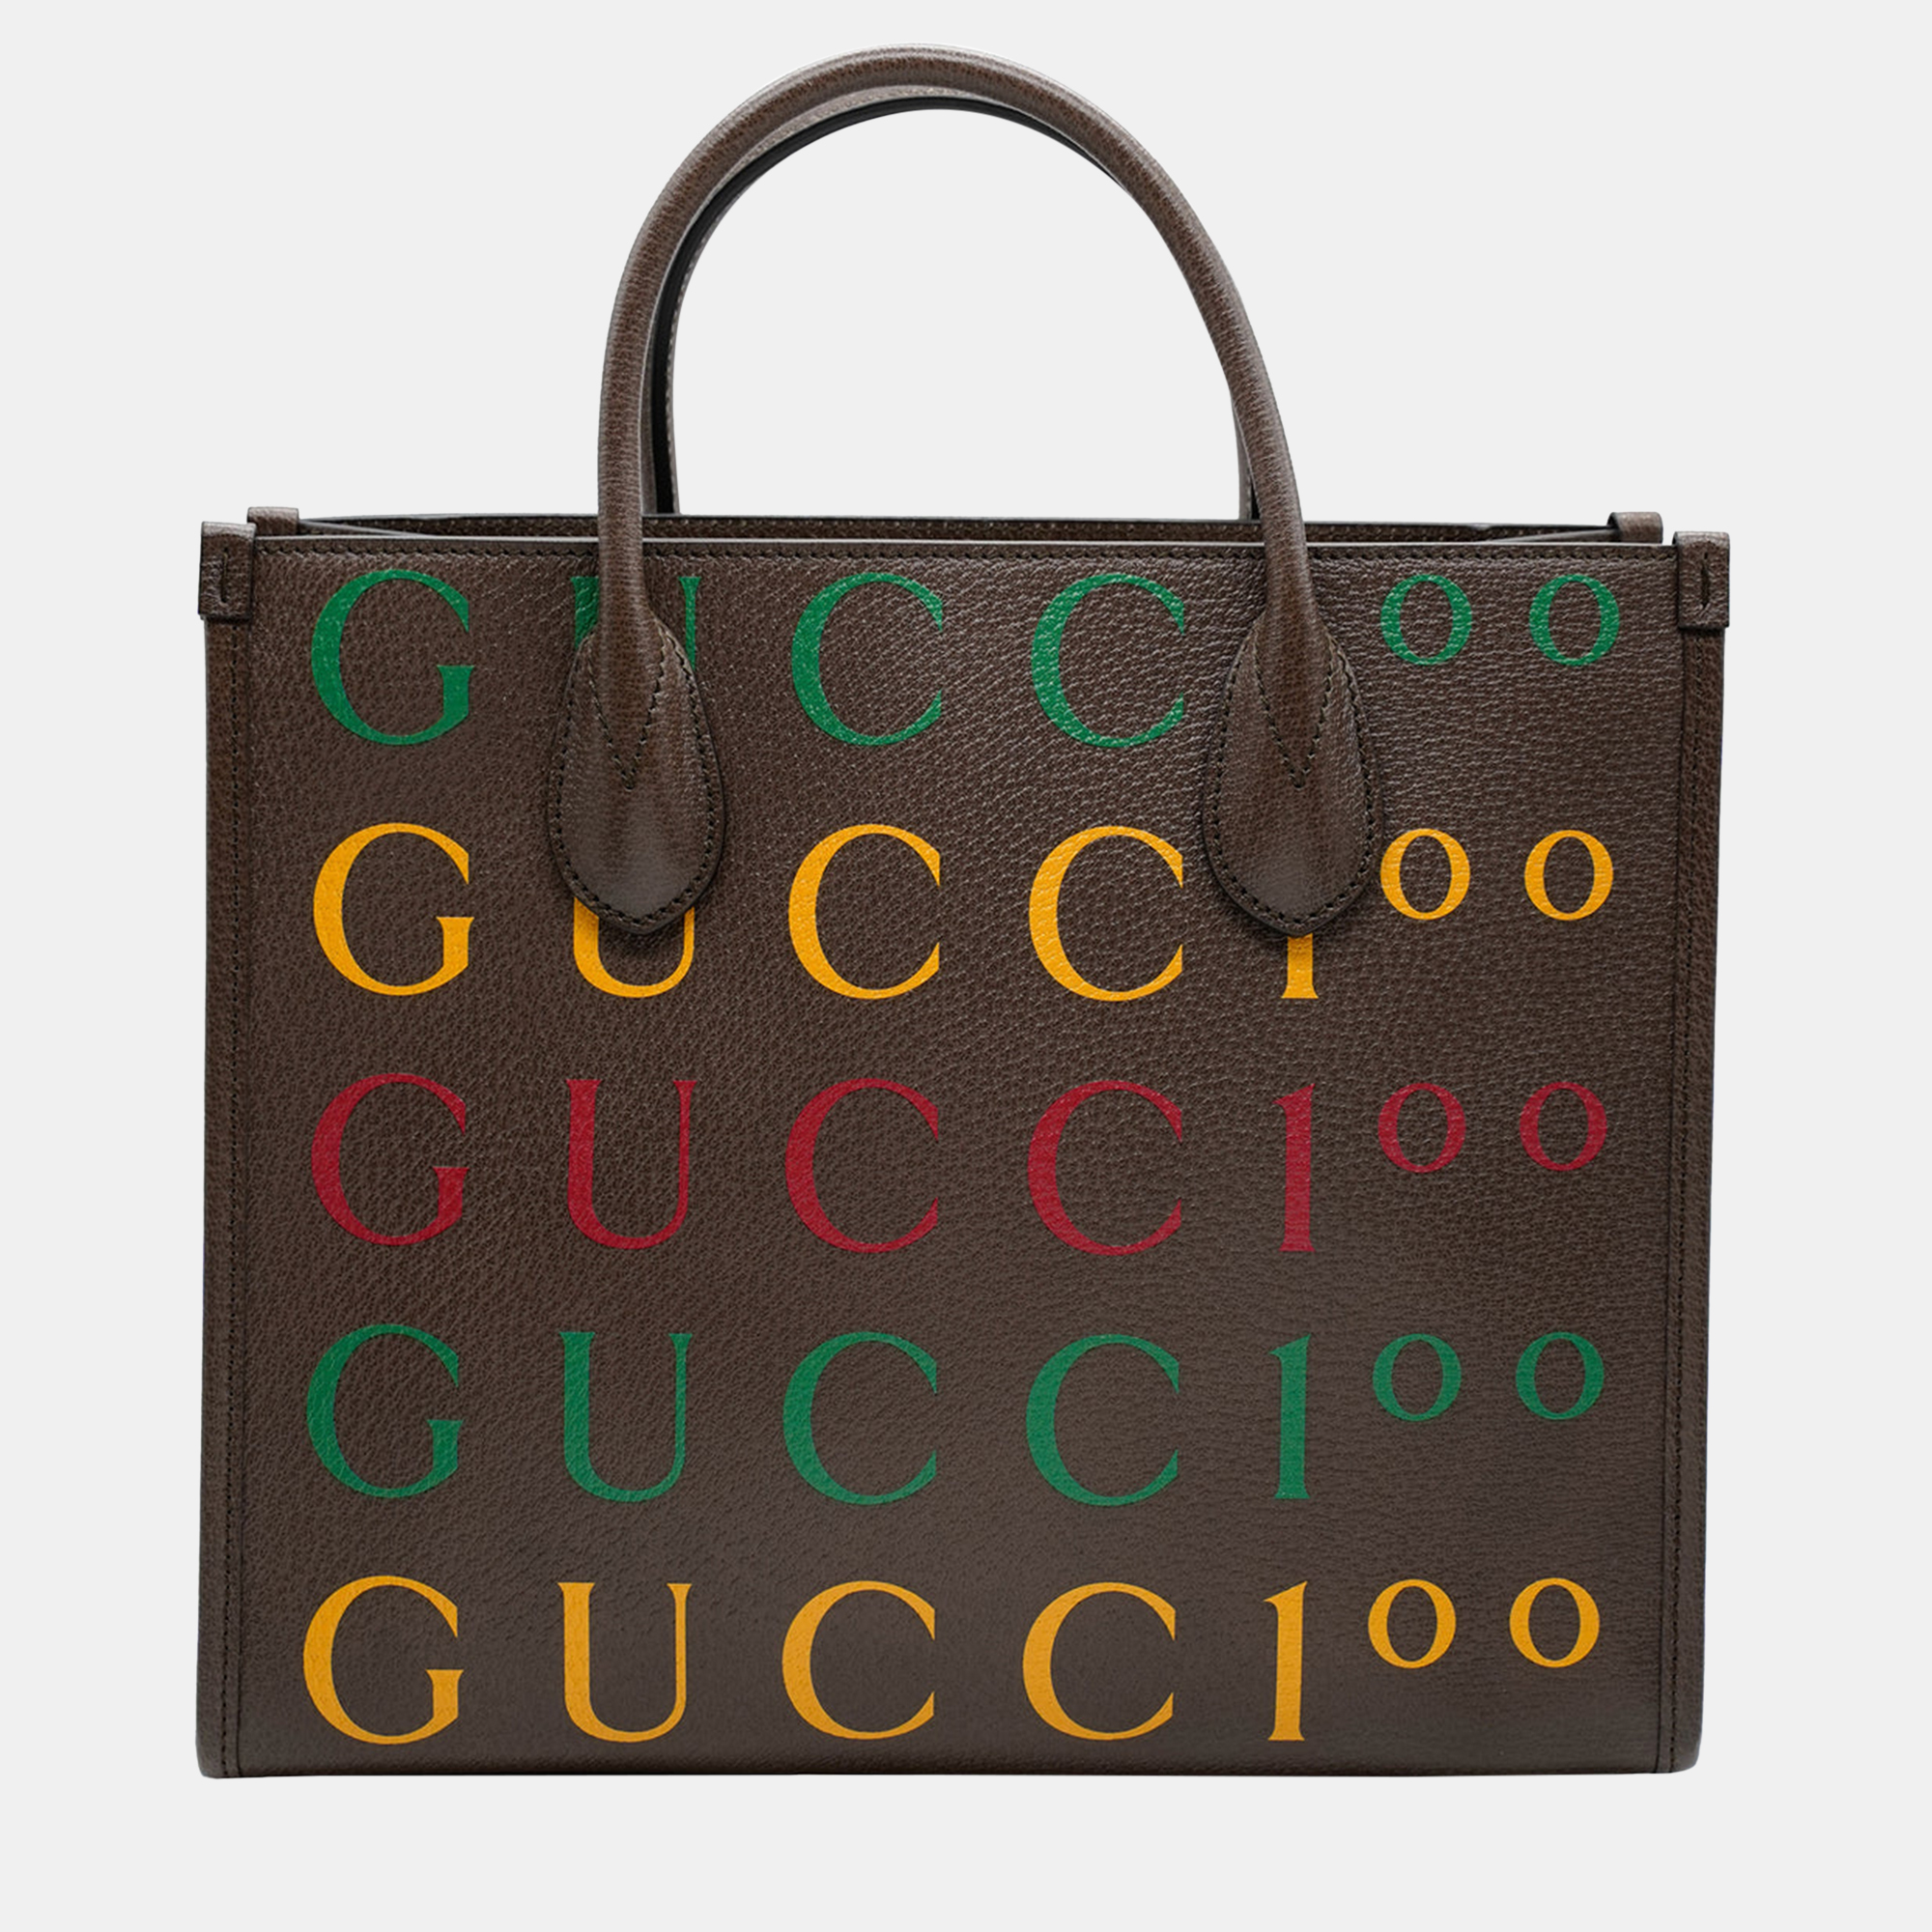 Gucci brown calf leather gucci 100 tote bag